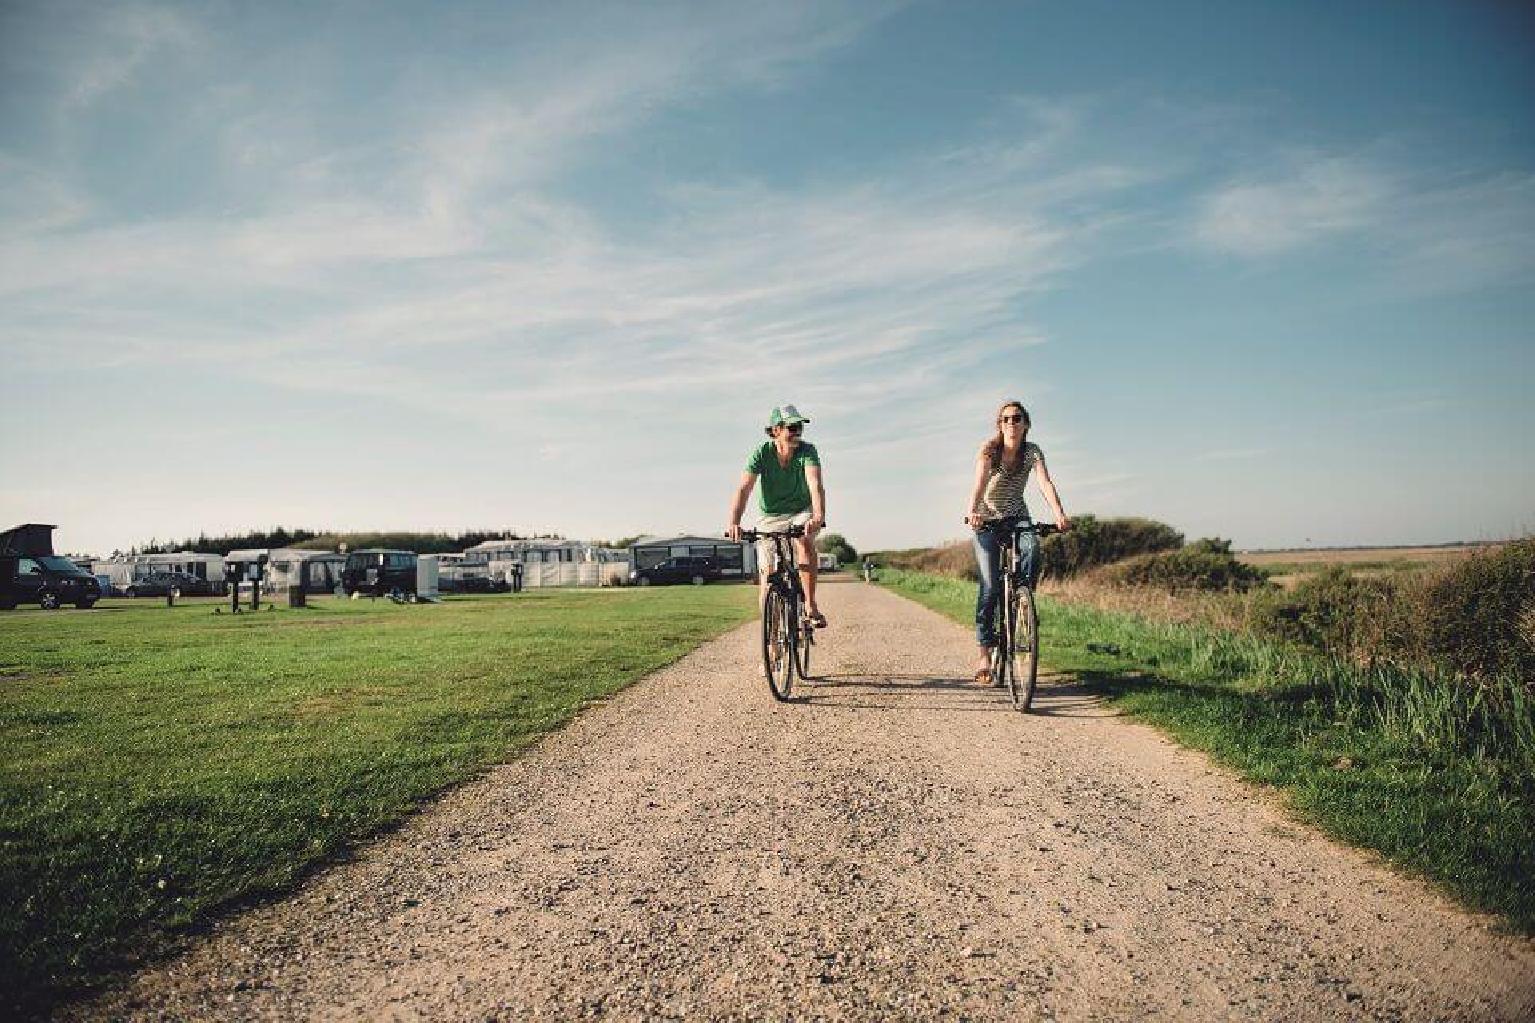 Einsteigertipps auf Sylt: Sehenswürdigkeiten auf Sylt - zwei Menschen auf dem Fahrrad für einen Kurzurlaub auf Sylt